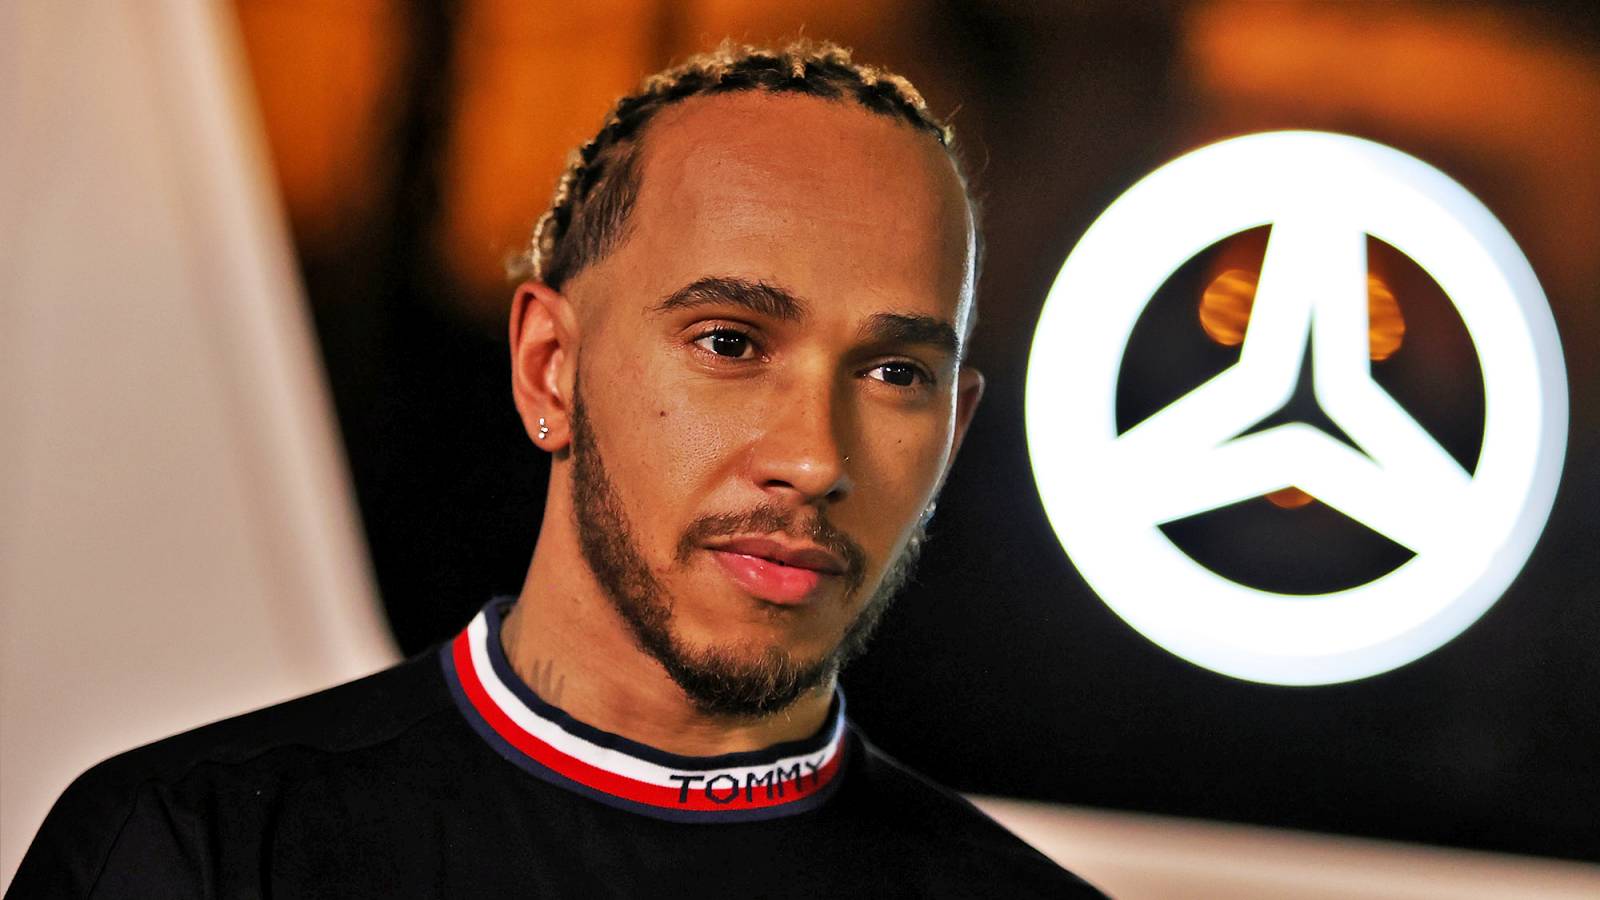 Formel 1 Lewis Hamilton imponerar på fansen Viktigt uttalande